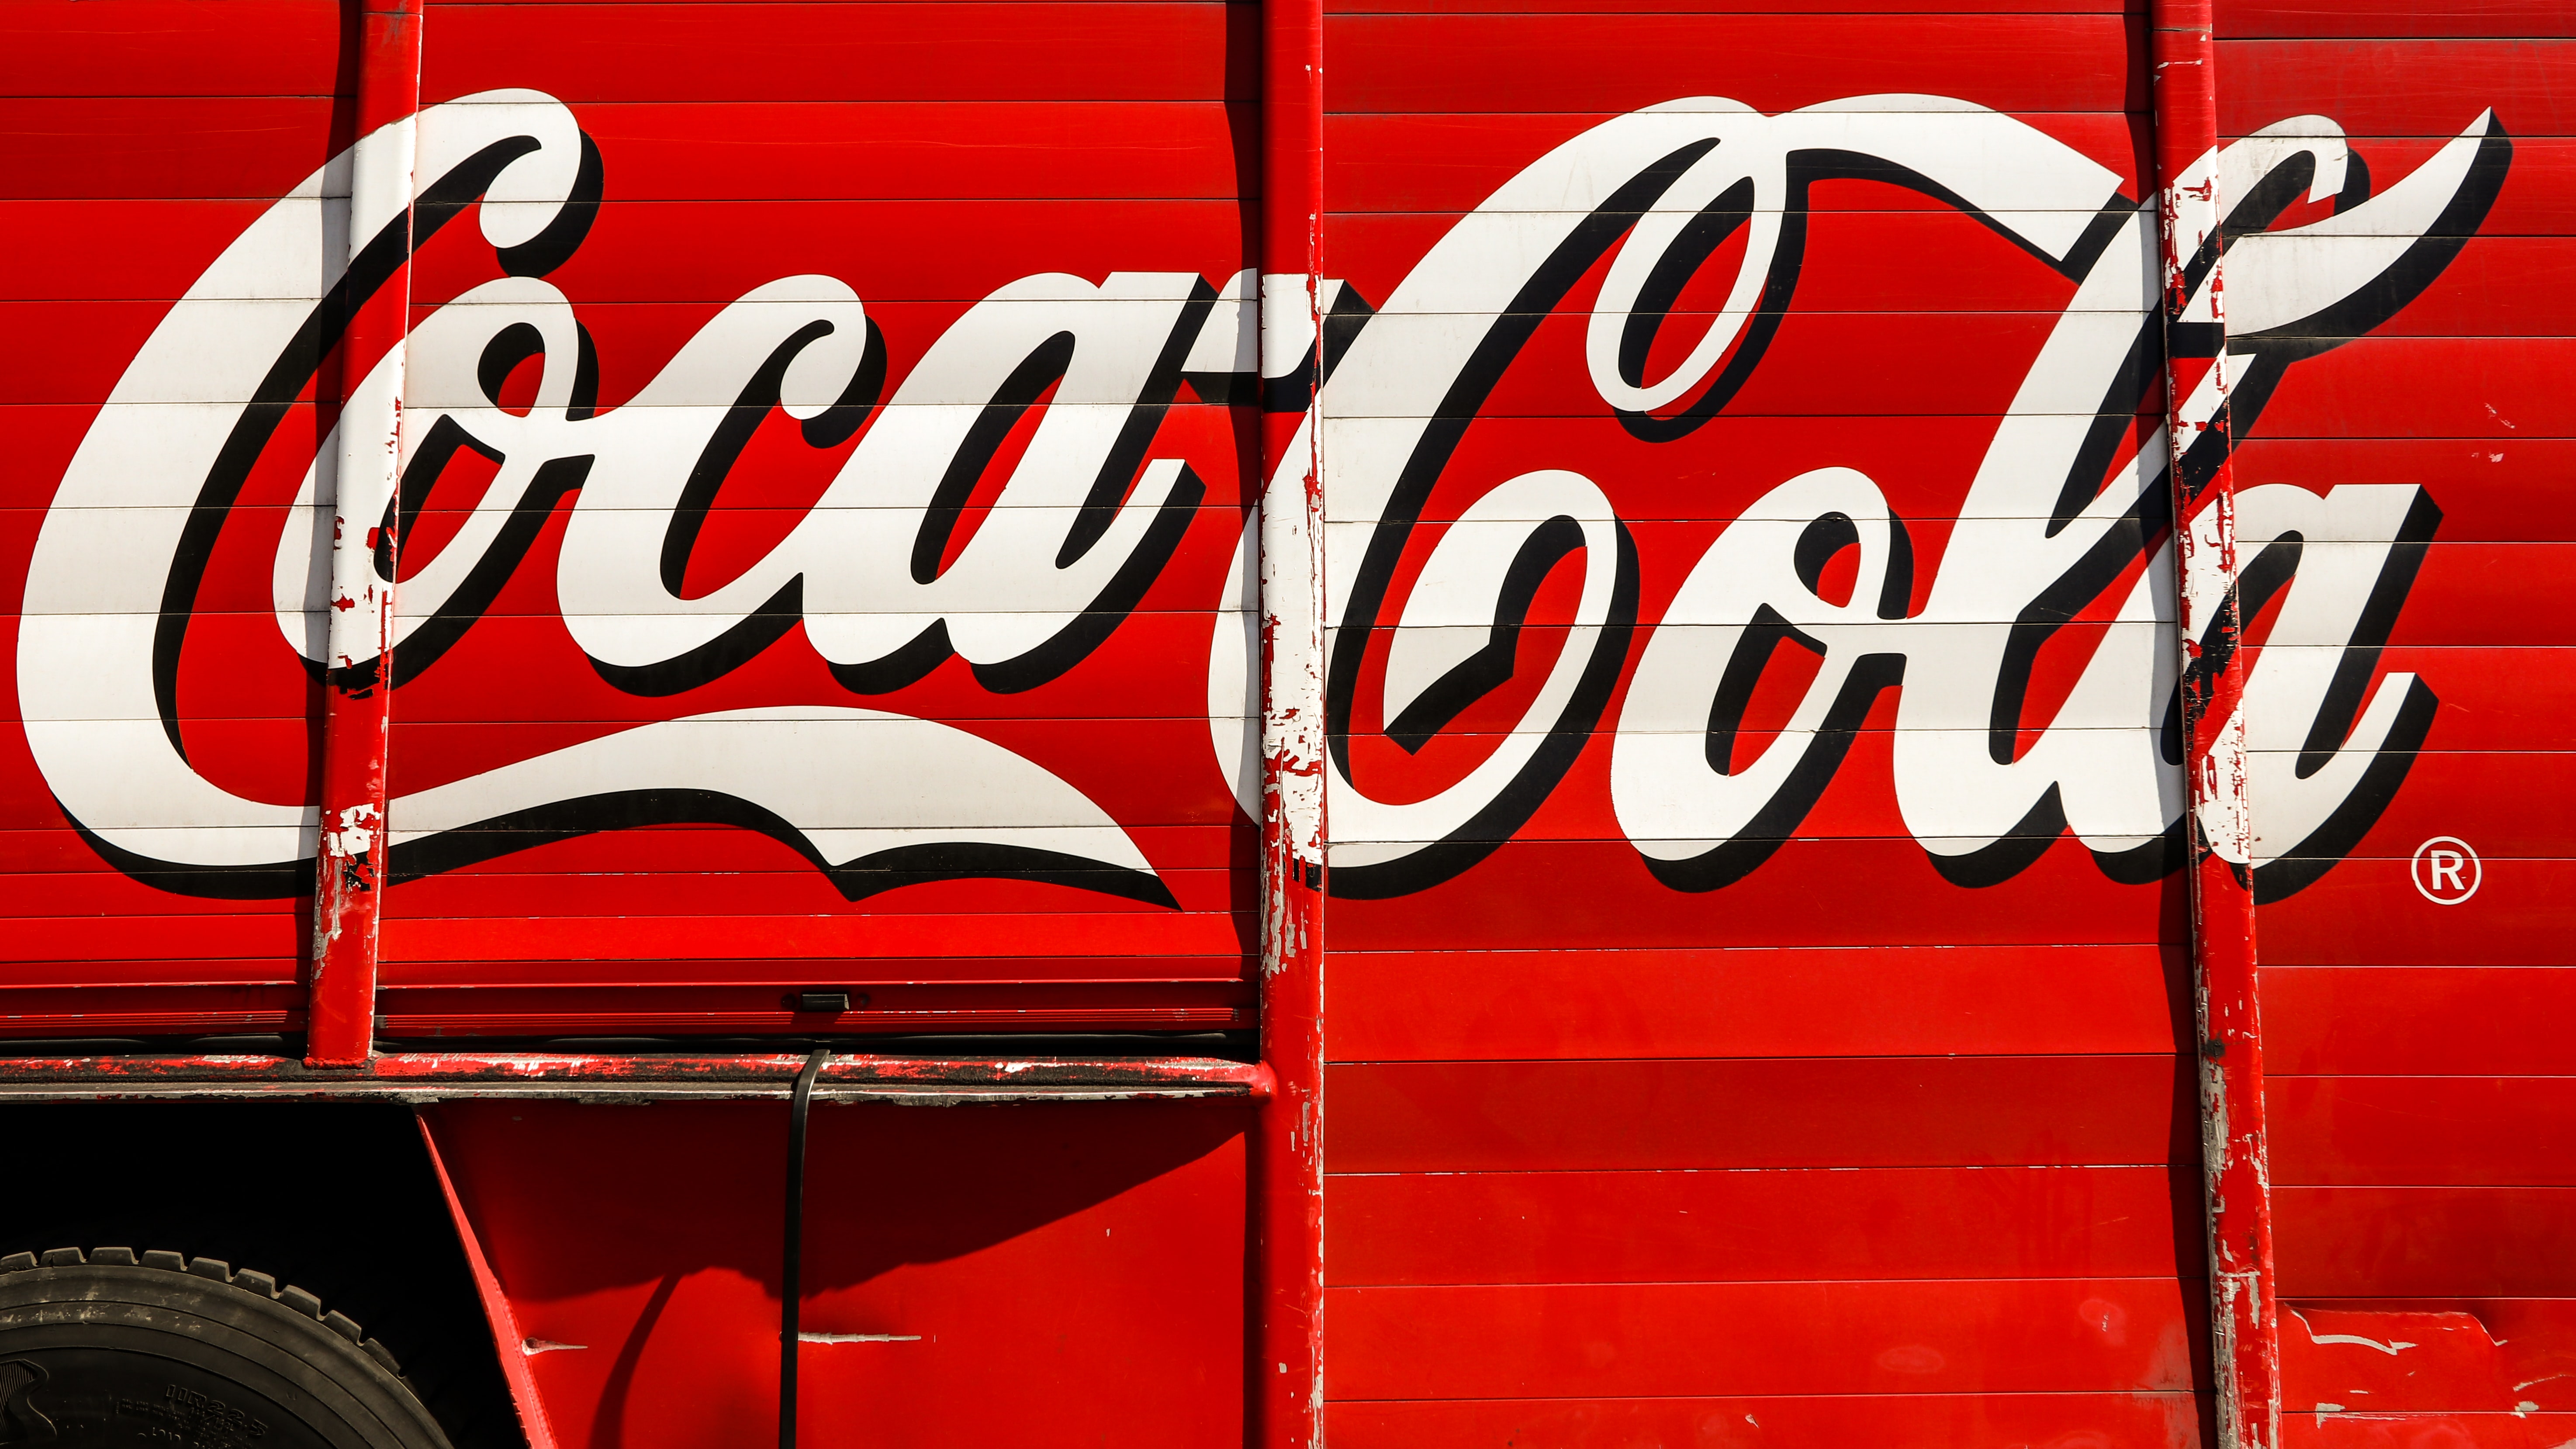 fotografia de close-up do trailer vermelho e branco da Coca-Cola